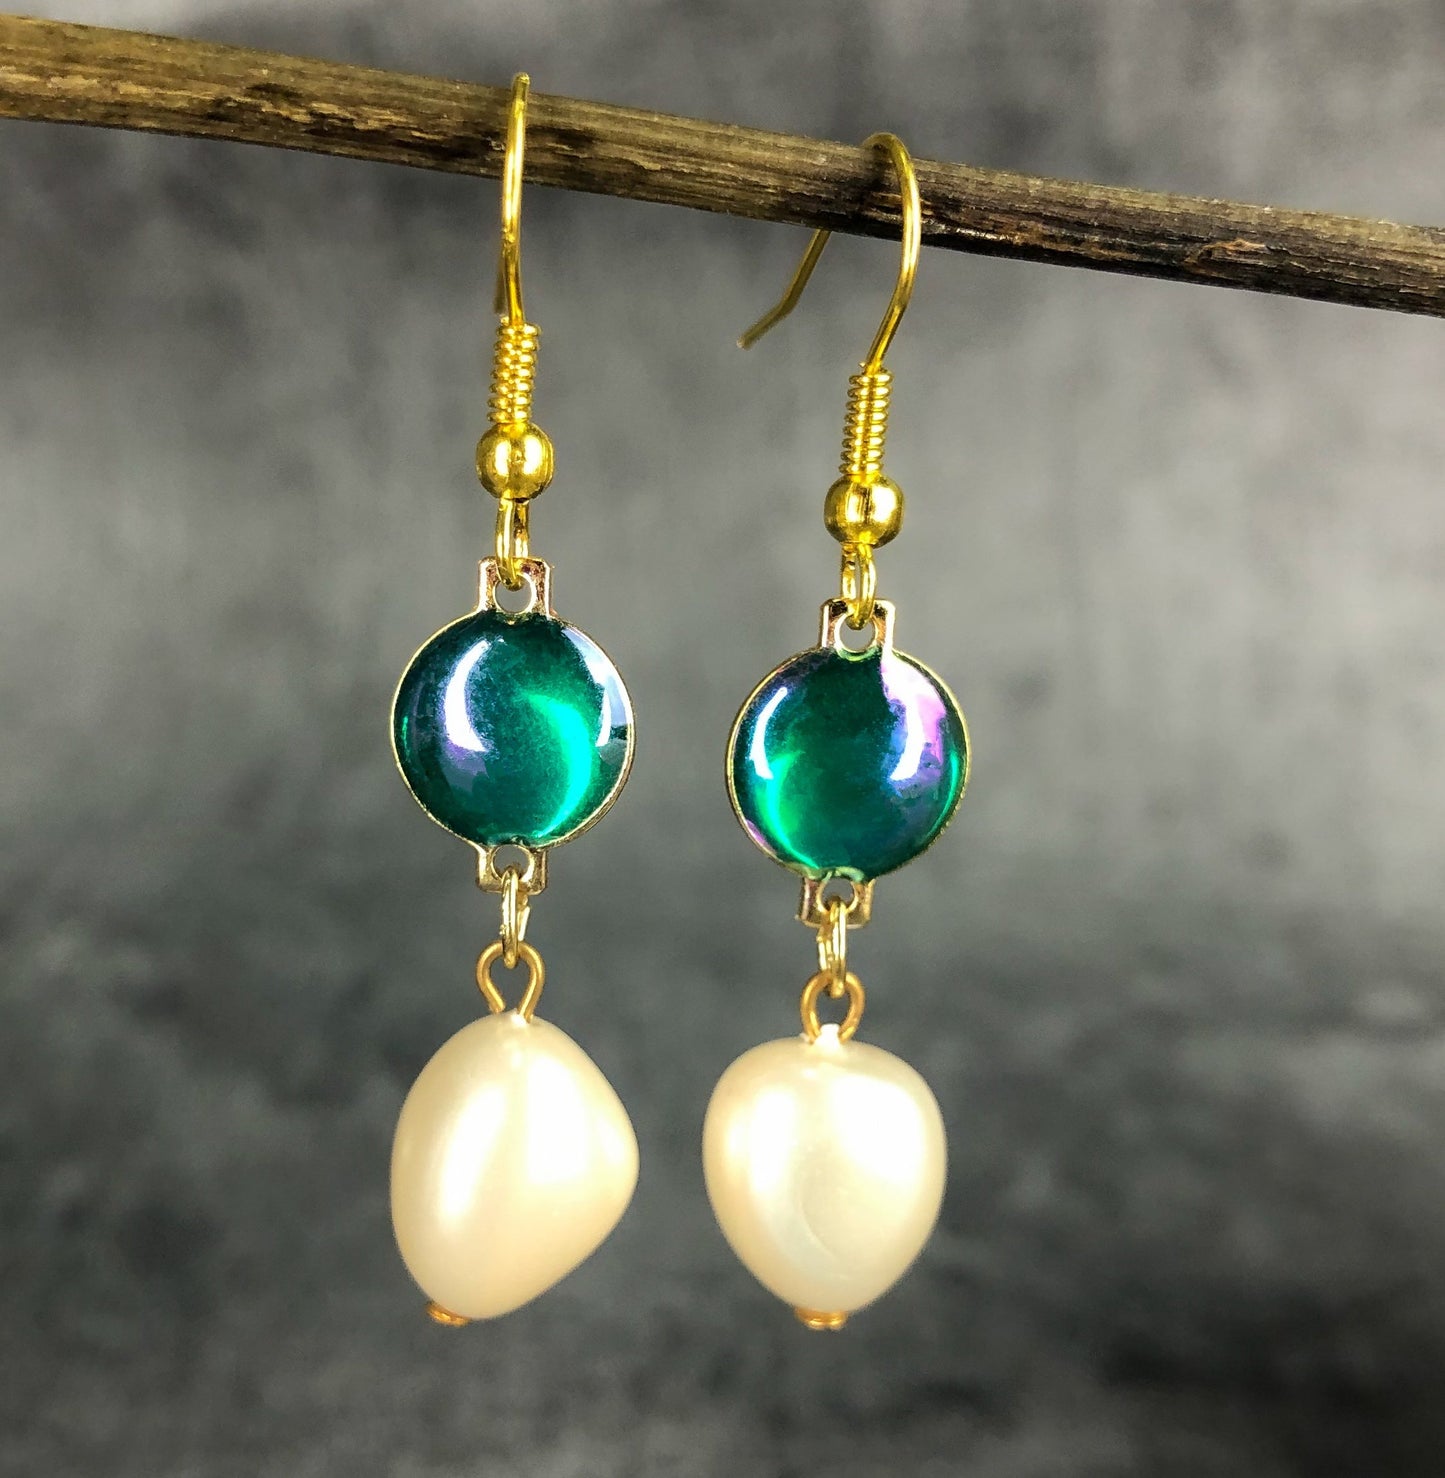 Pearl earrings in vintage style